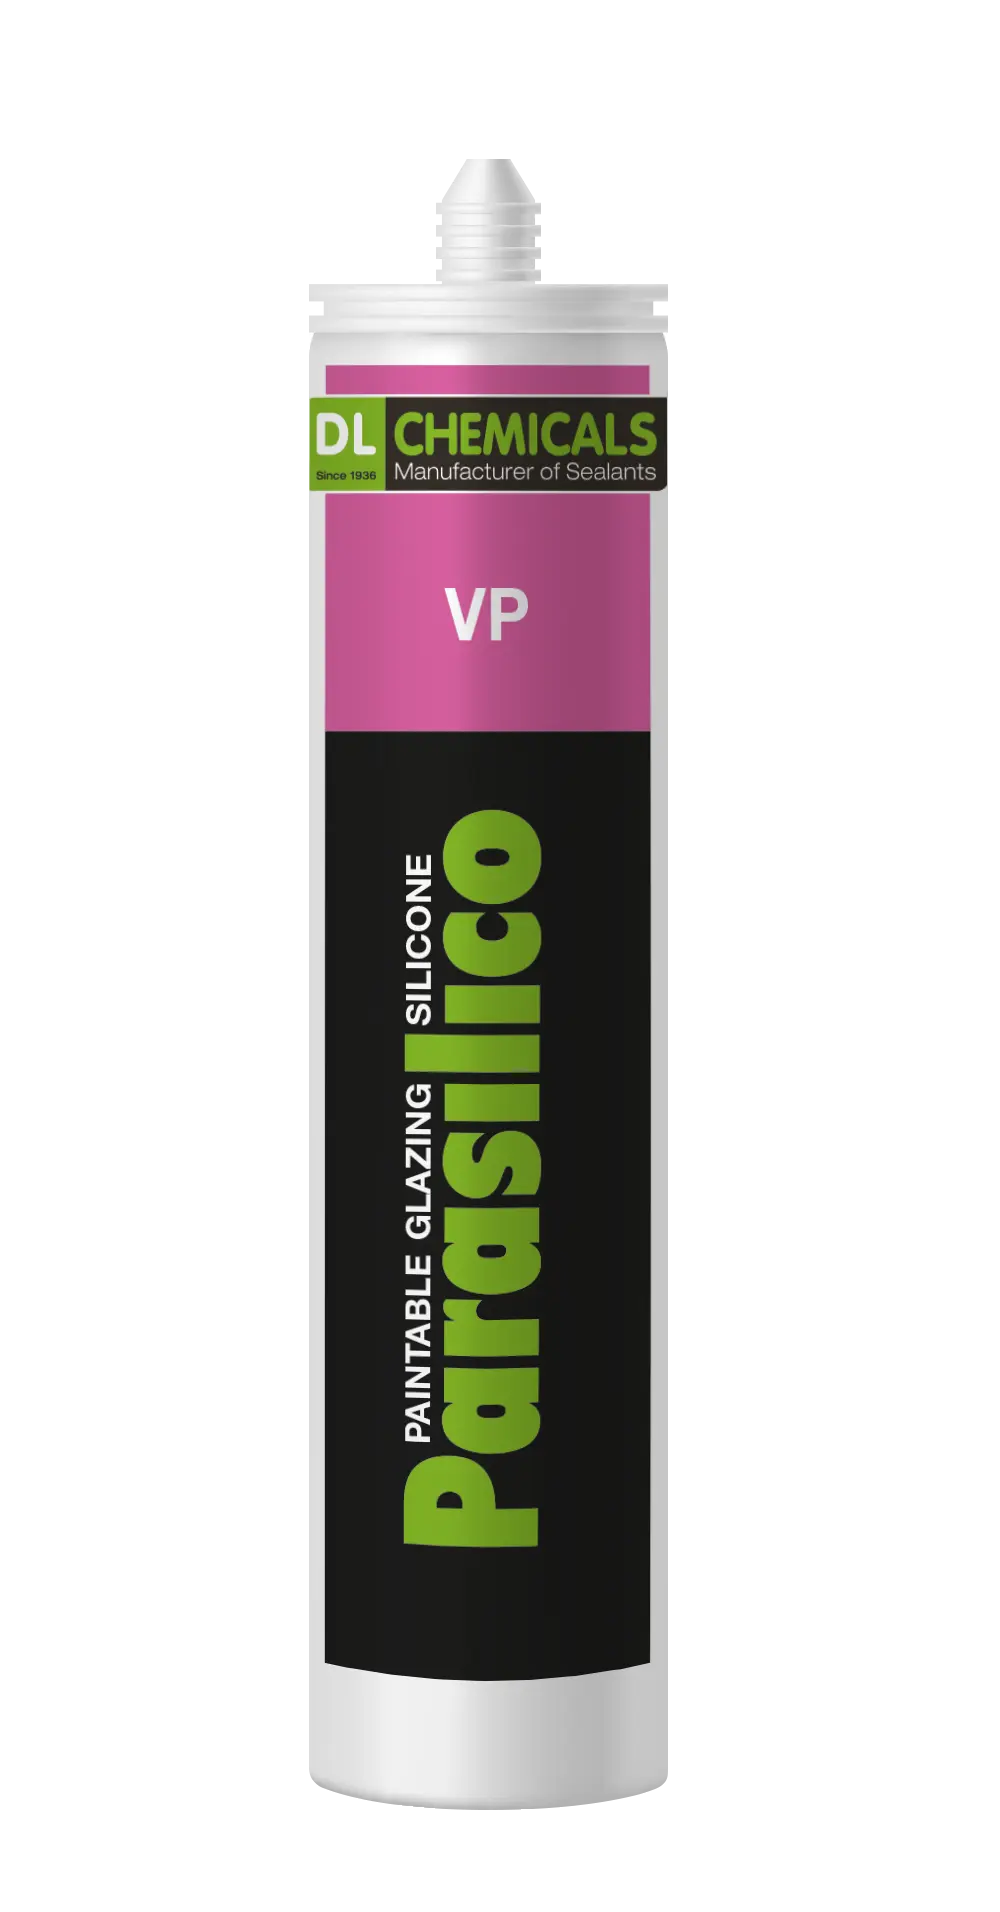 Mastic silicone Parasilico VP - RAL 8007 brun clair (cartouche 300ml)